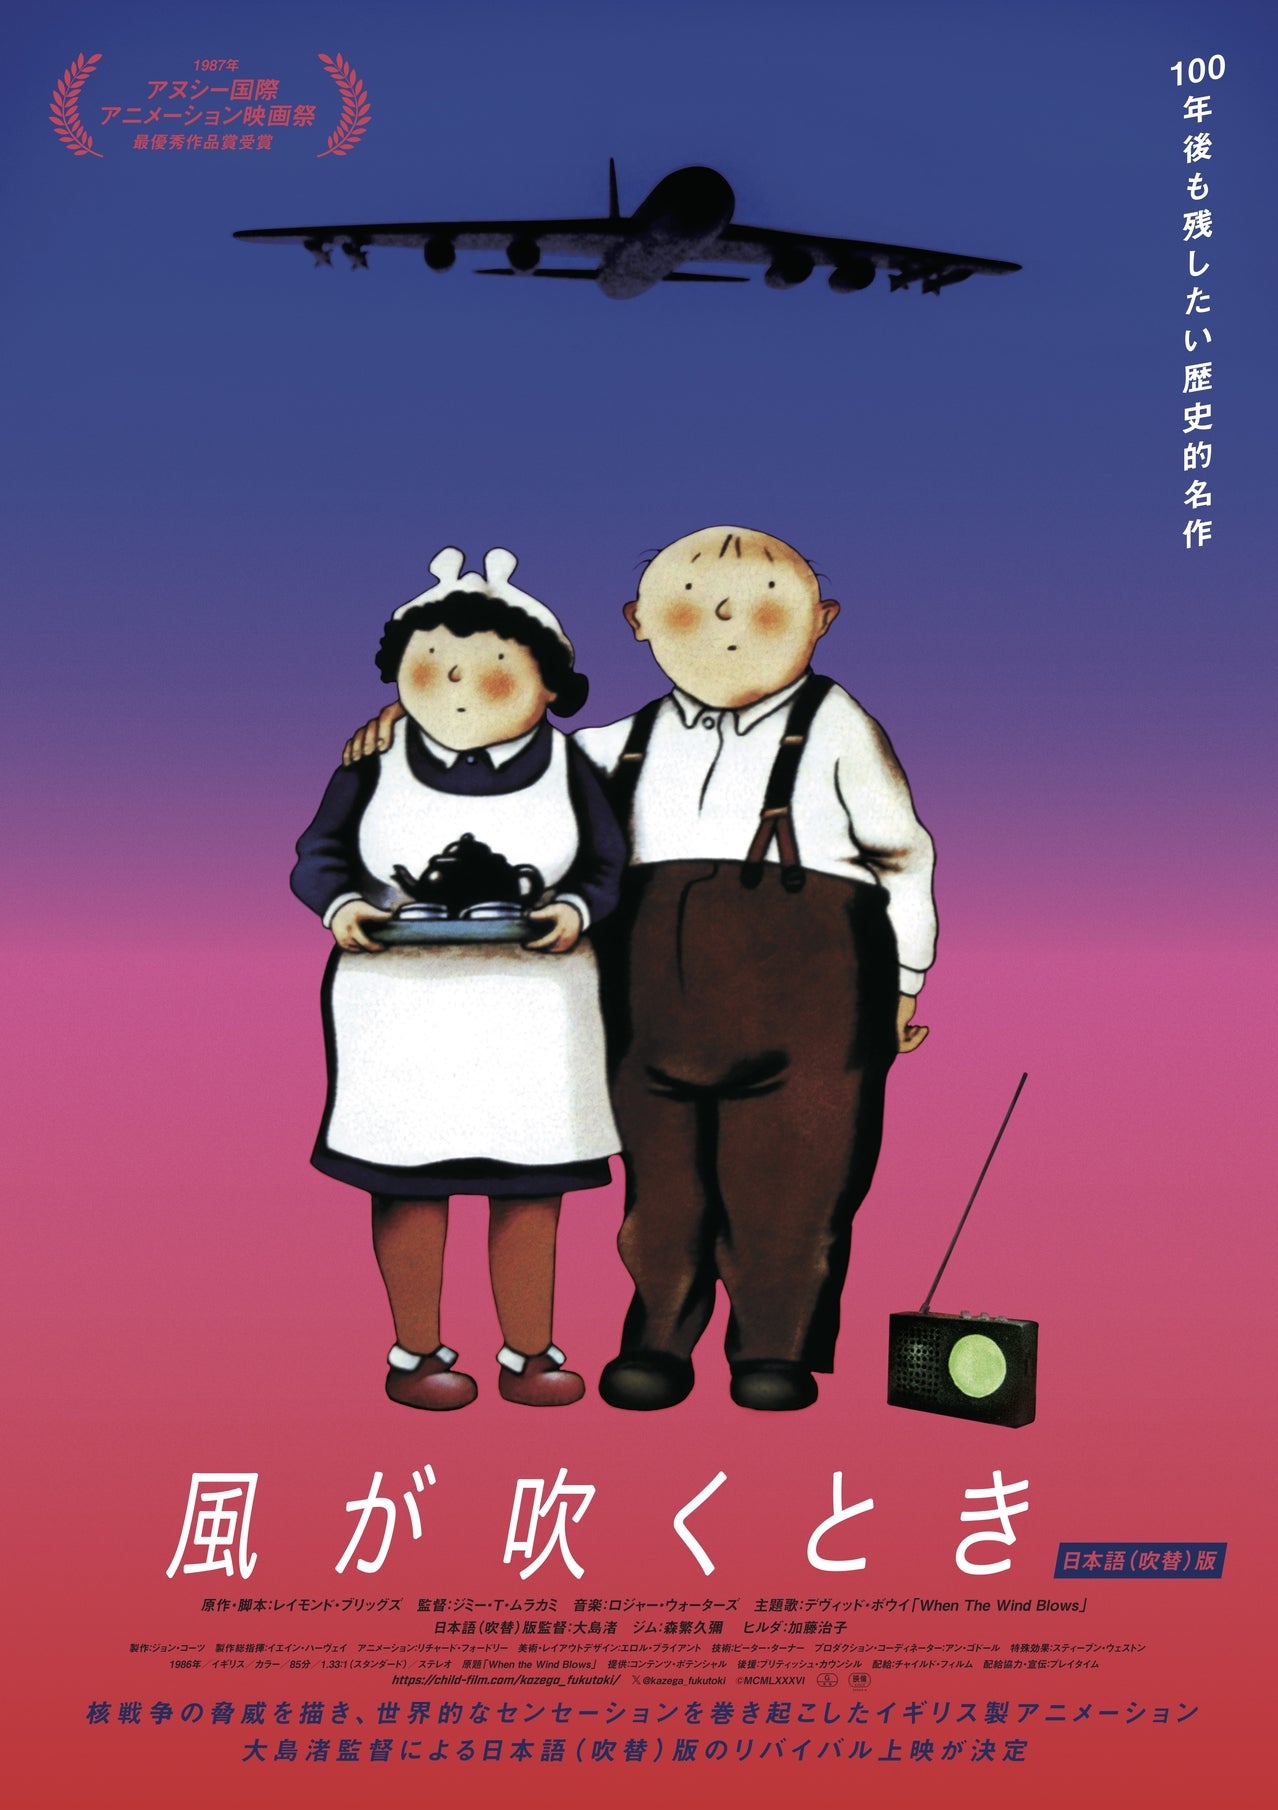 核戦争の脅威を描いた英国アニメ「風が吹くとき」日本版ポスター、追加場面写真公開デビッド・ボウイの主題歌含むサントラ再発売